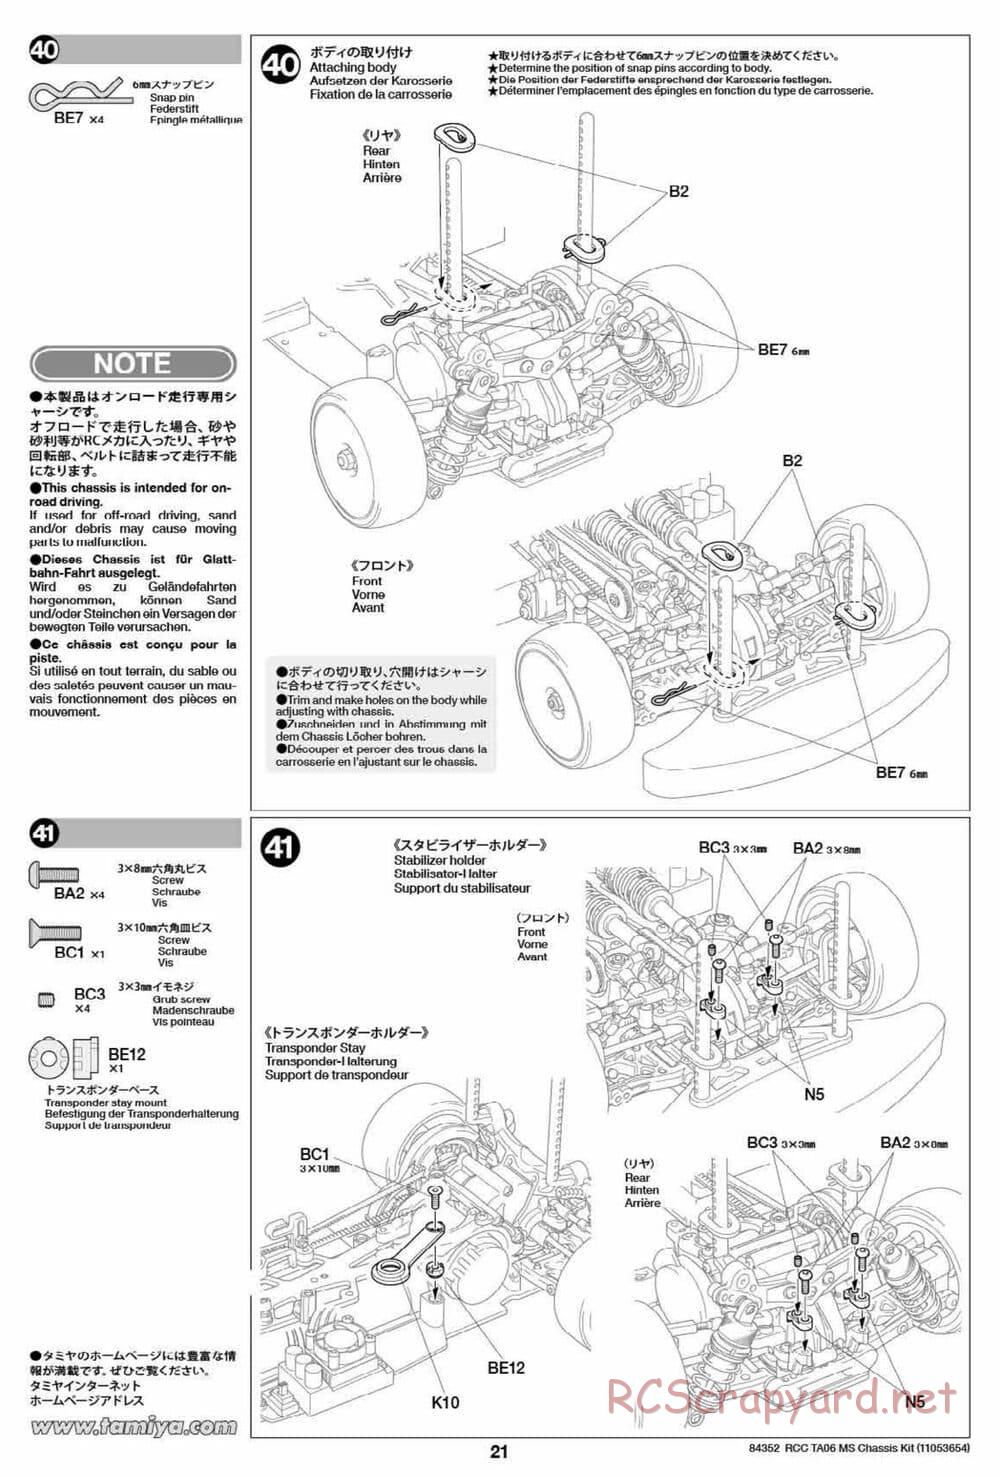 Tamiya - TA06 MS Chassis - Manual - Page 21